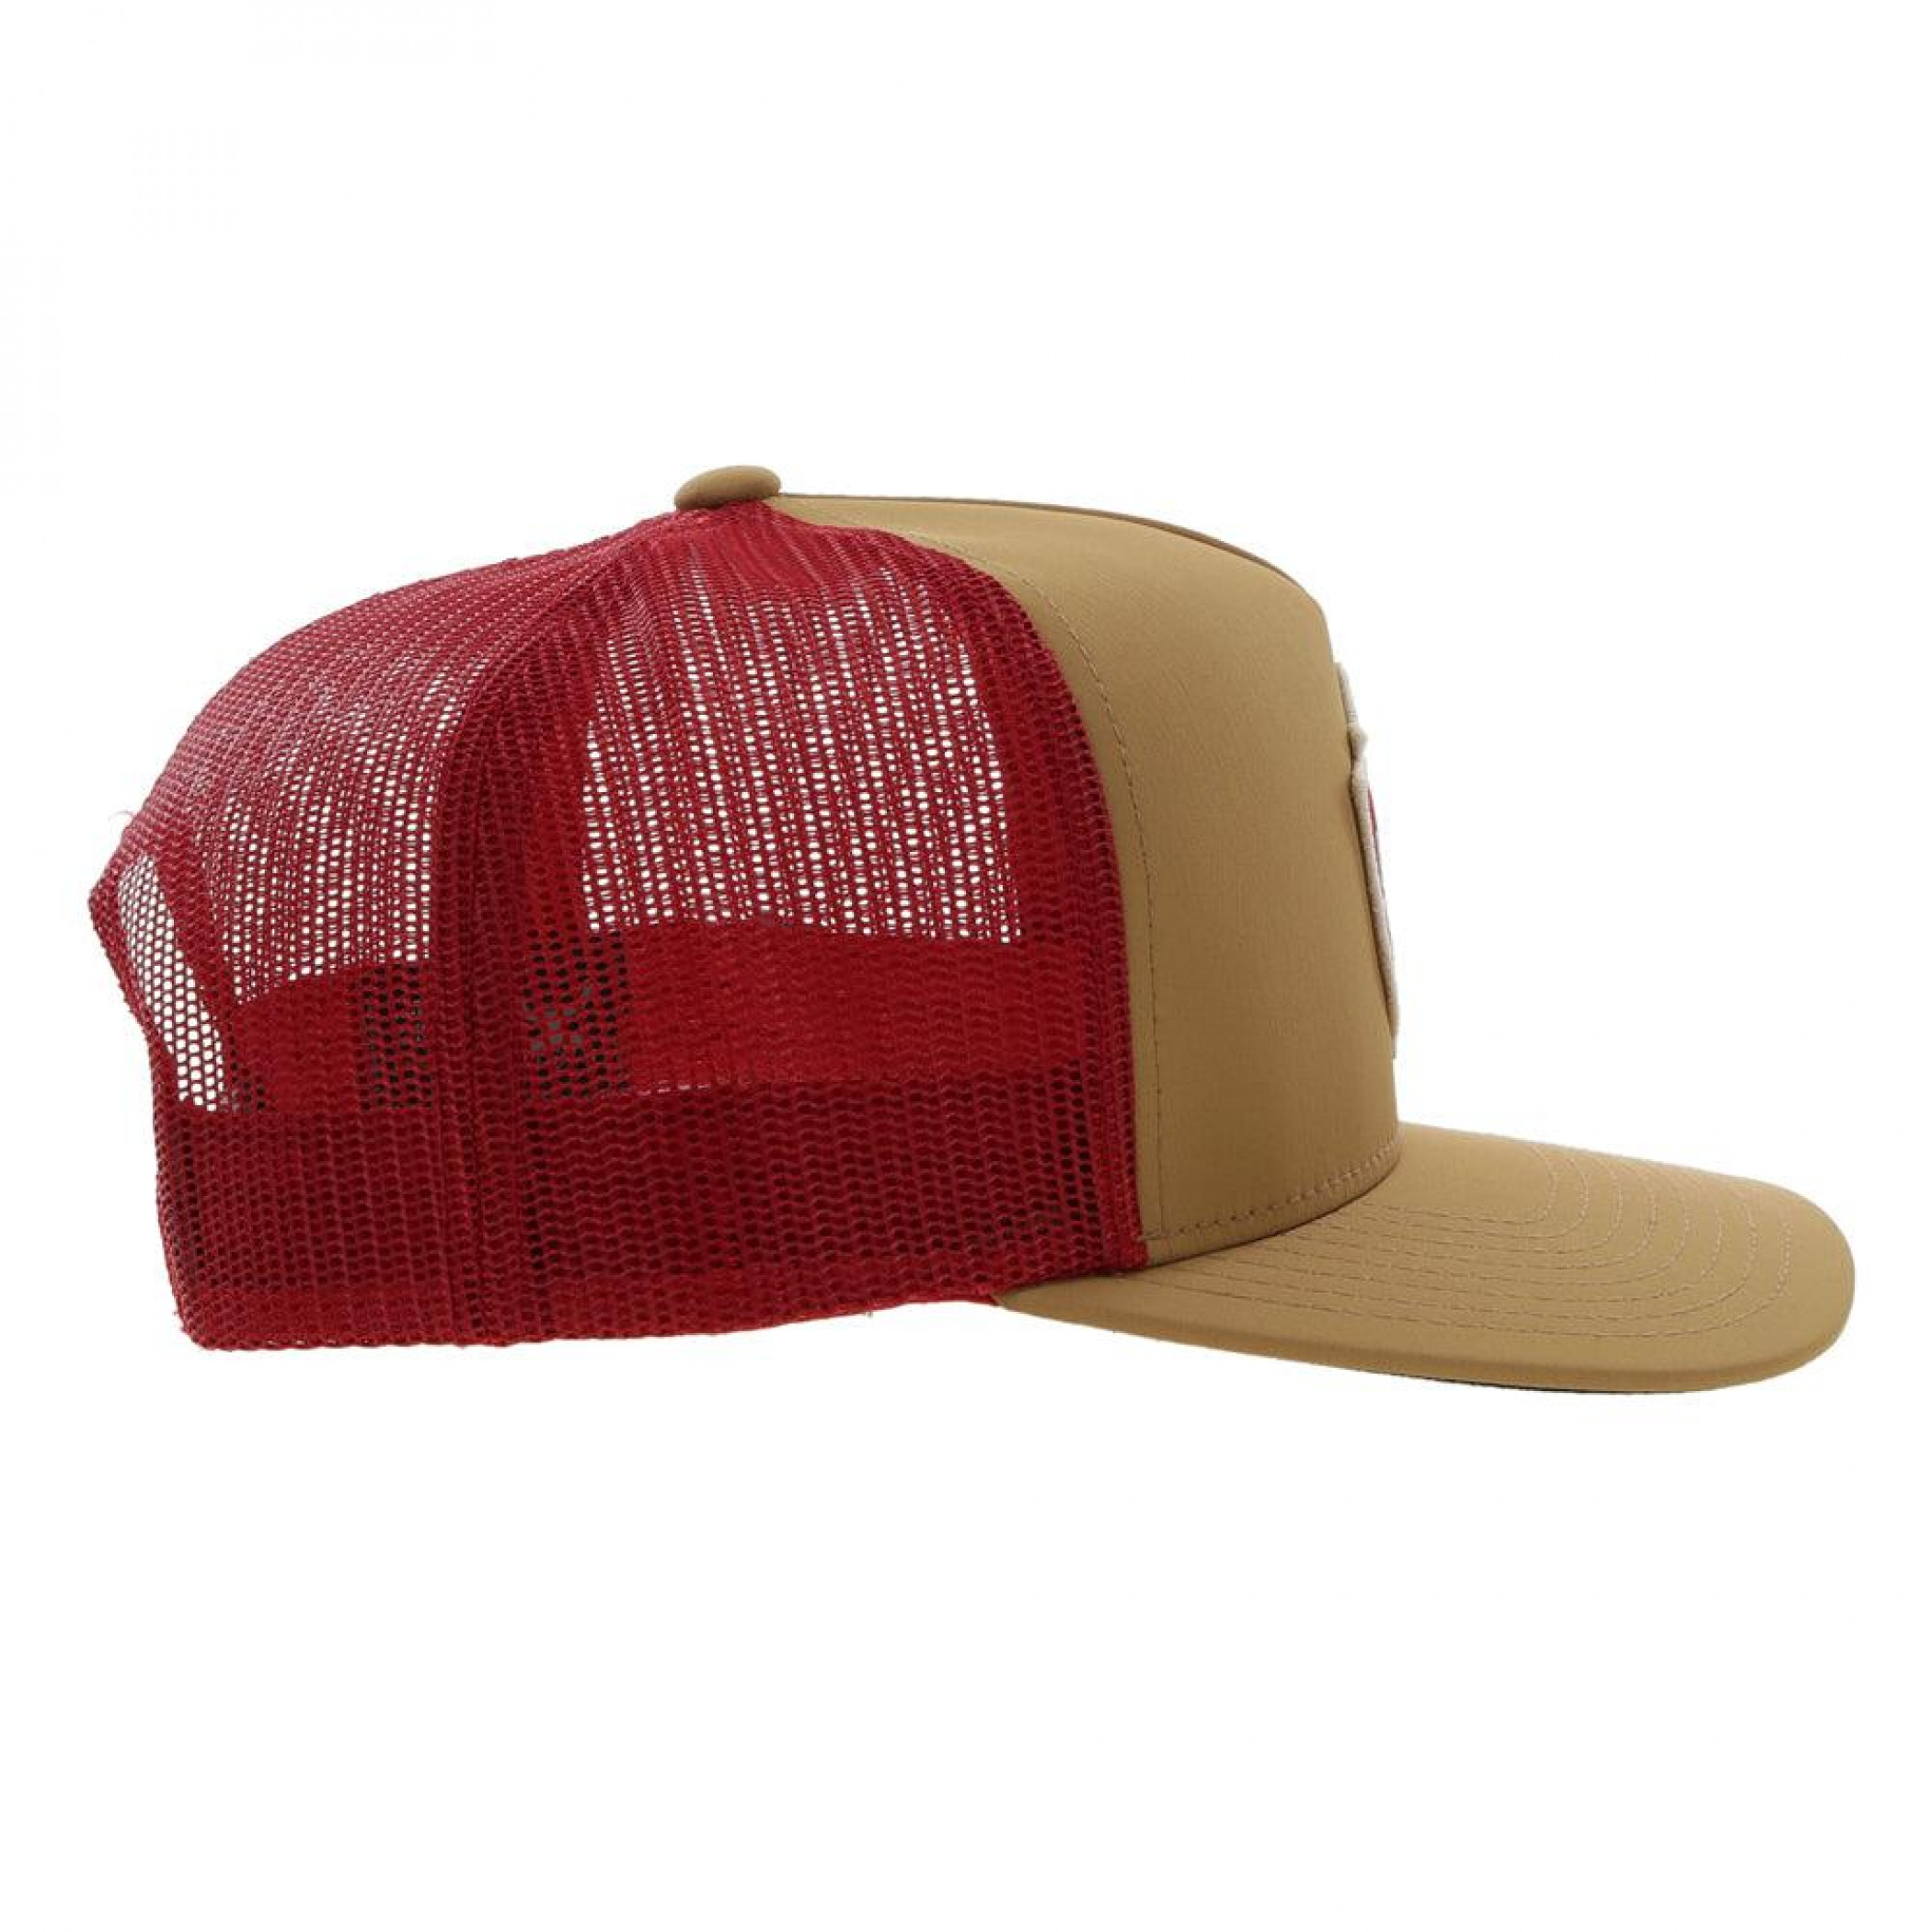 Lone Star Beer Hooey Tan and Red Colorway Snapback Trucker Hat